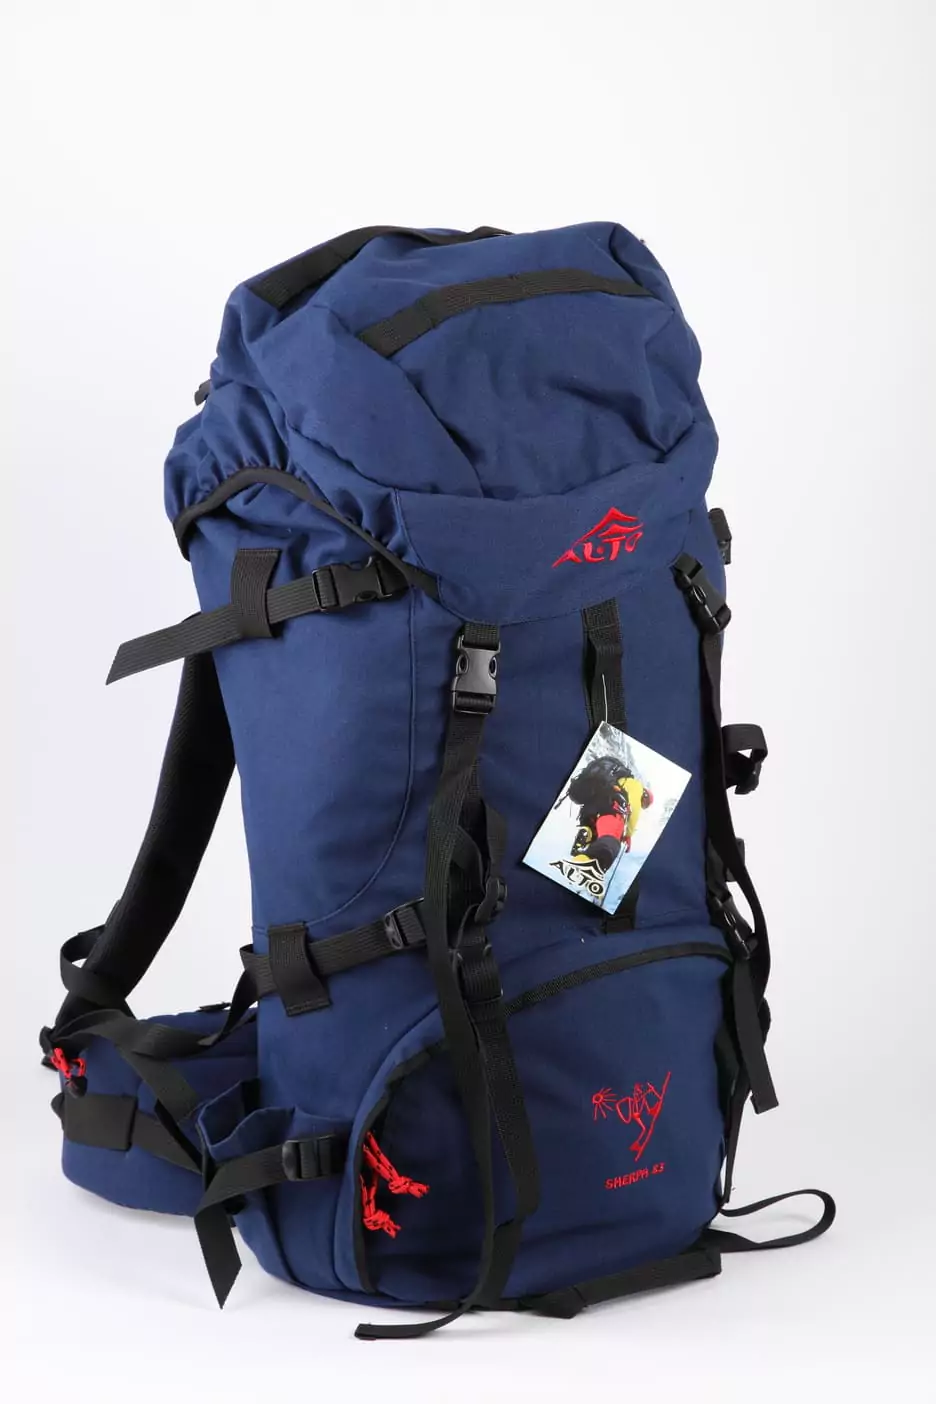 Serpa83 trekking backpack